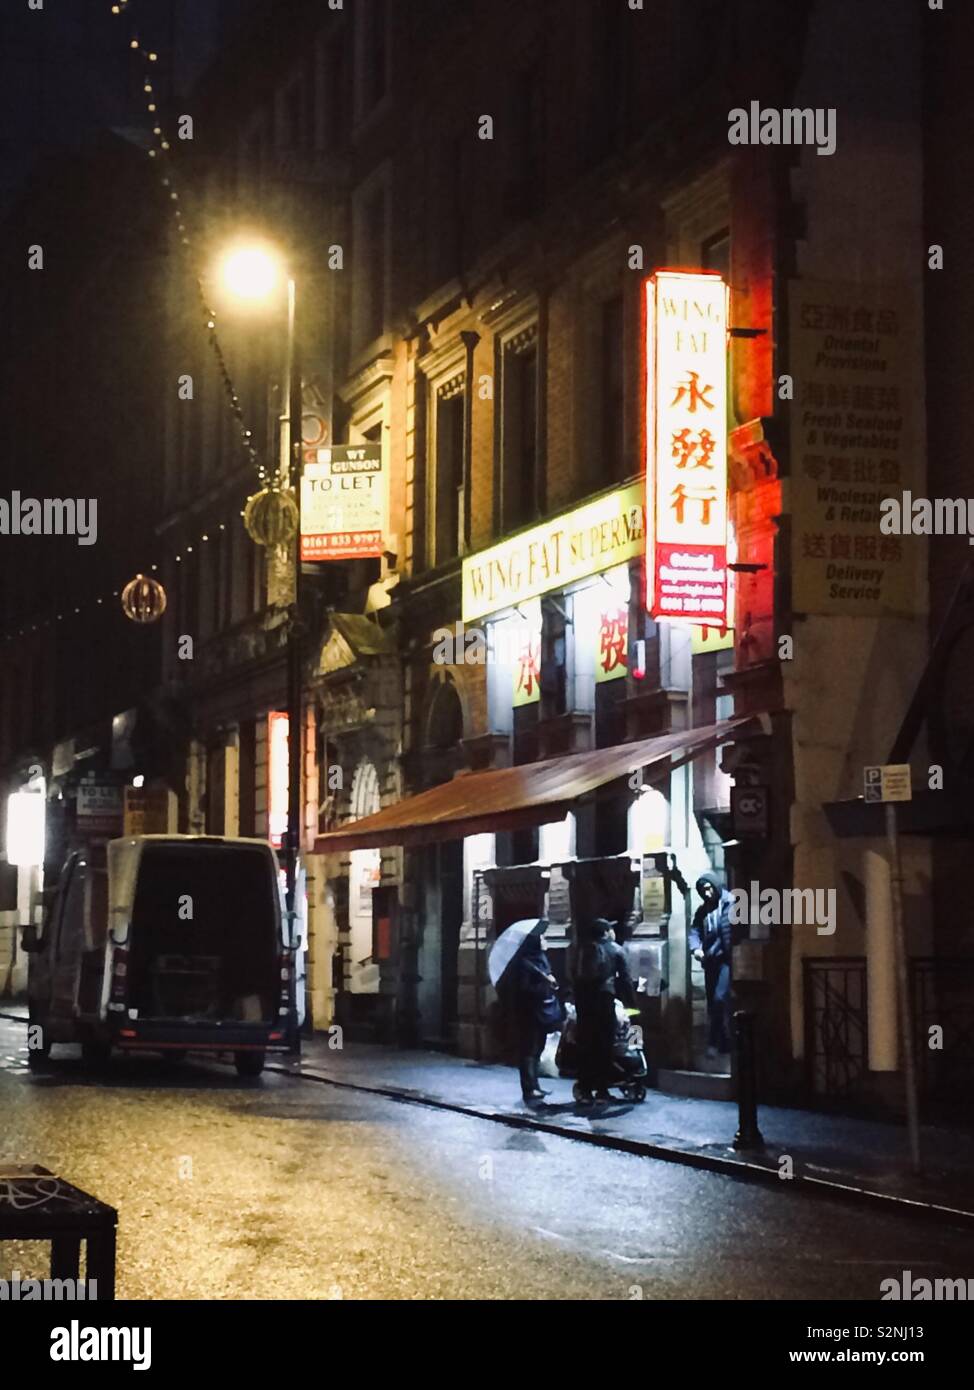 Chinatown street at night Stock Photo